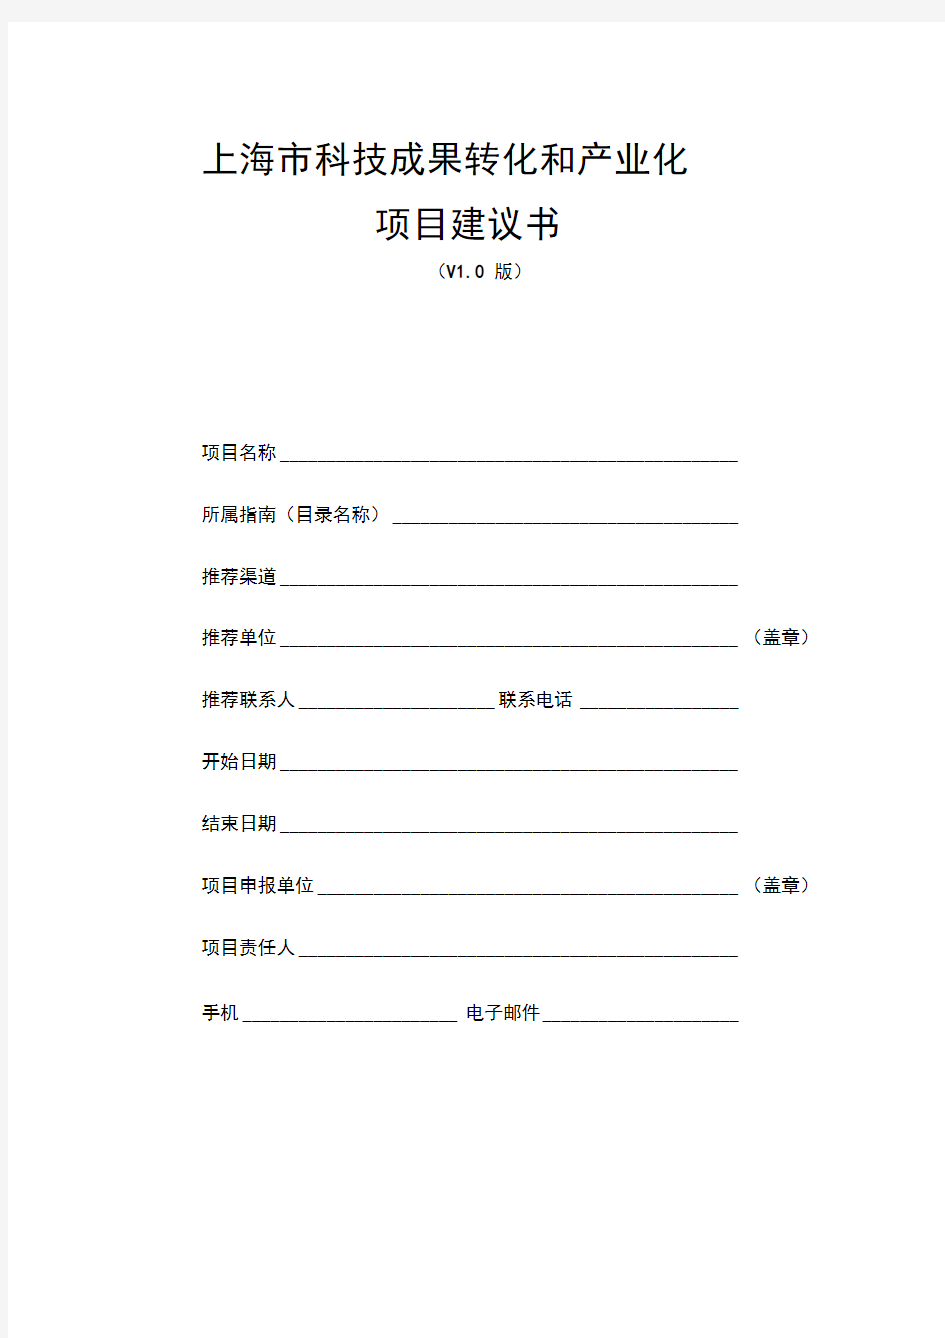 上海市科技成果转化项目建议书模板(含财务预算明细表模板)